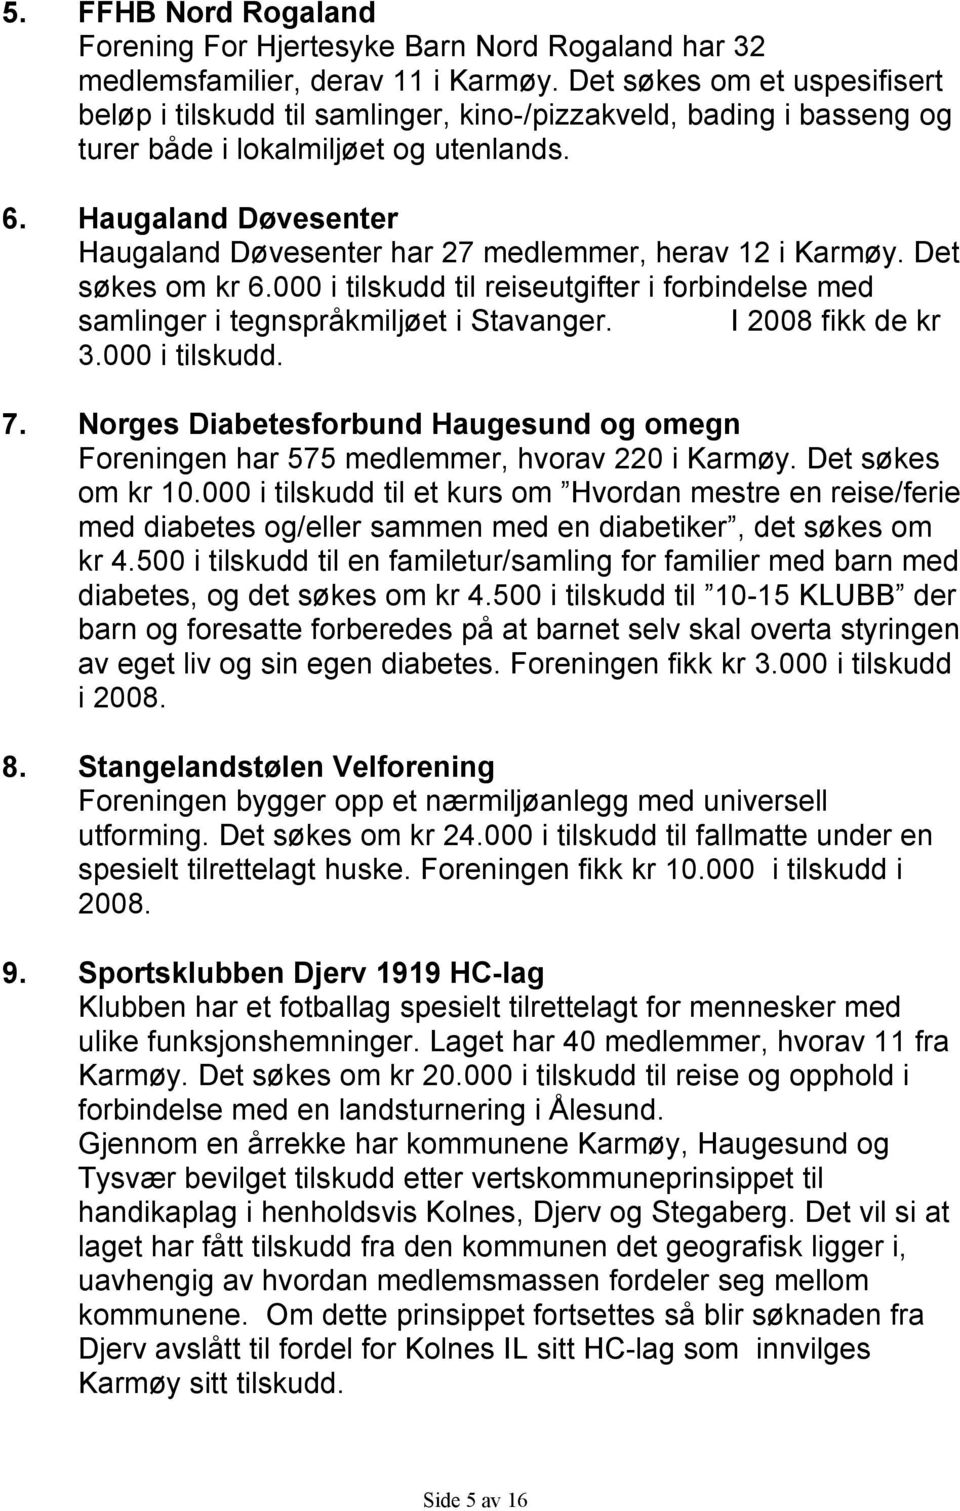 Haugaland Døvesenter Haugaland Døvesenter har 27 medlemmer, herav 12 i Karmøy. Det søkes om kr 6.000 i tilskudd til reiseutgifter i forbindelse med samlinger i tegnspråkmiljøet i Stavanger.